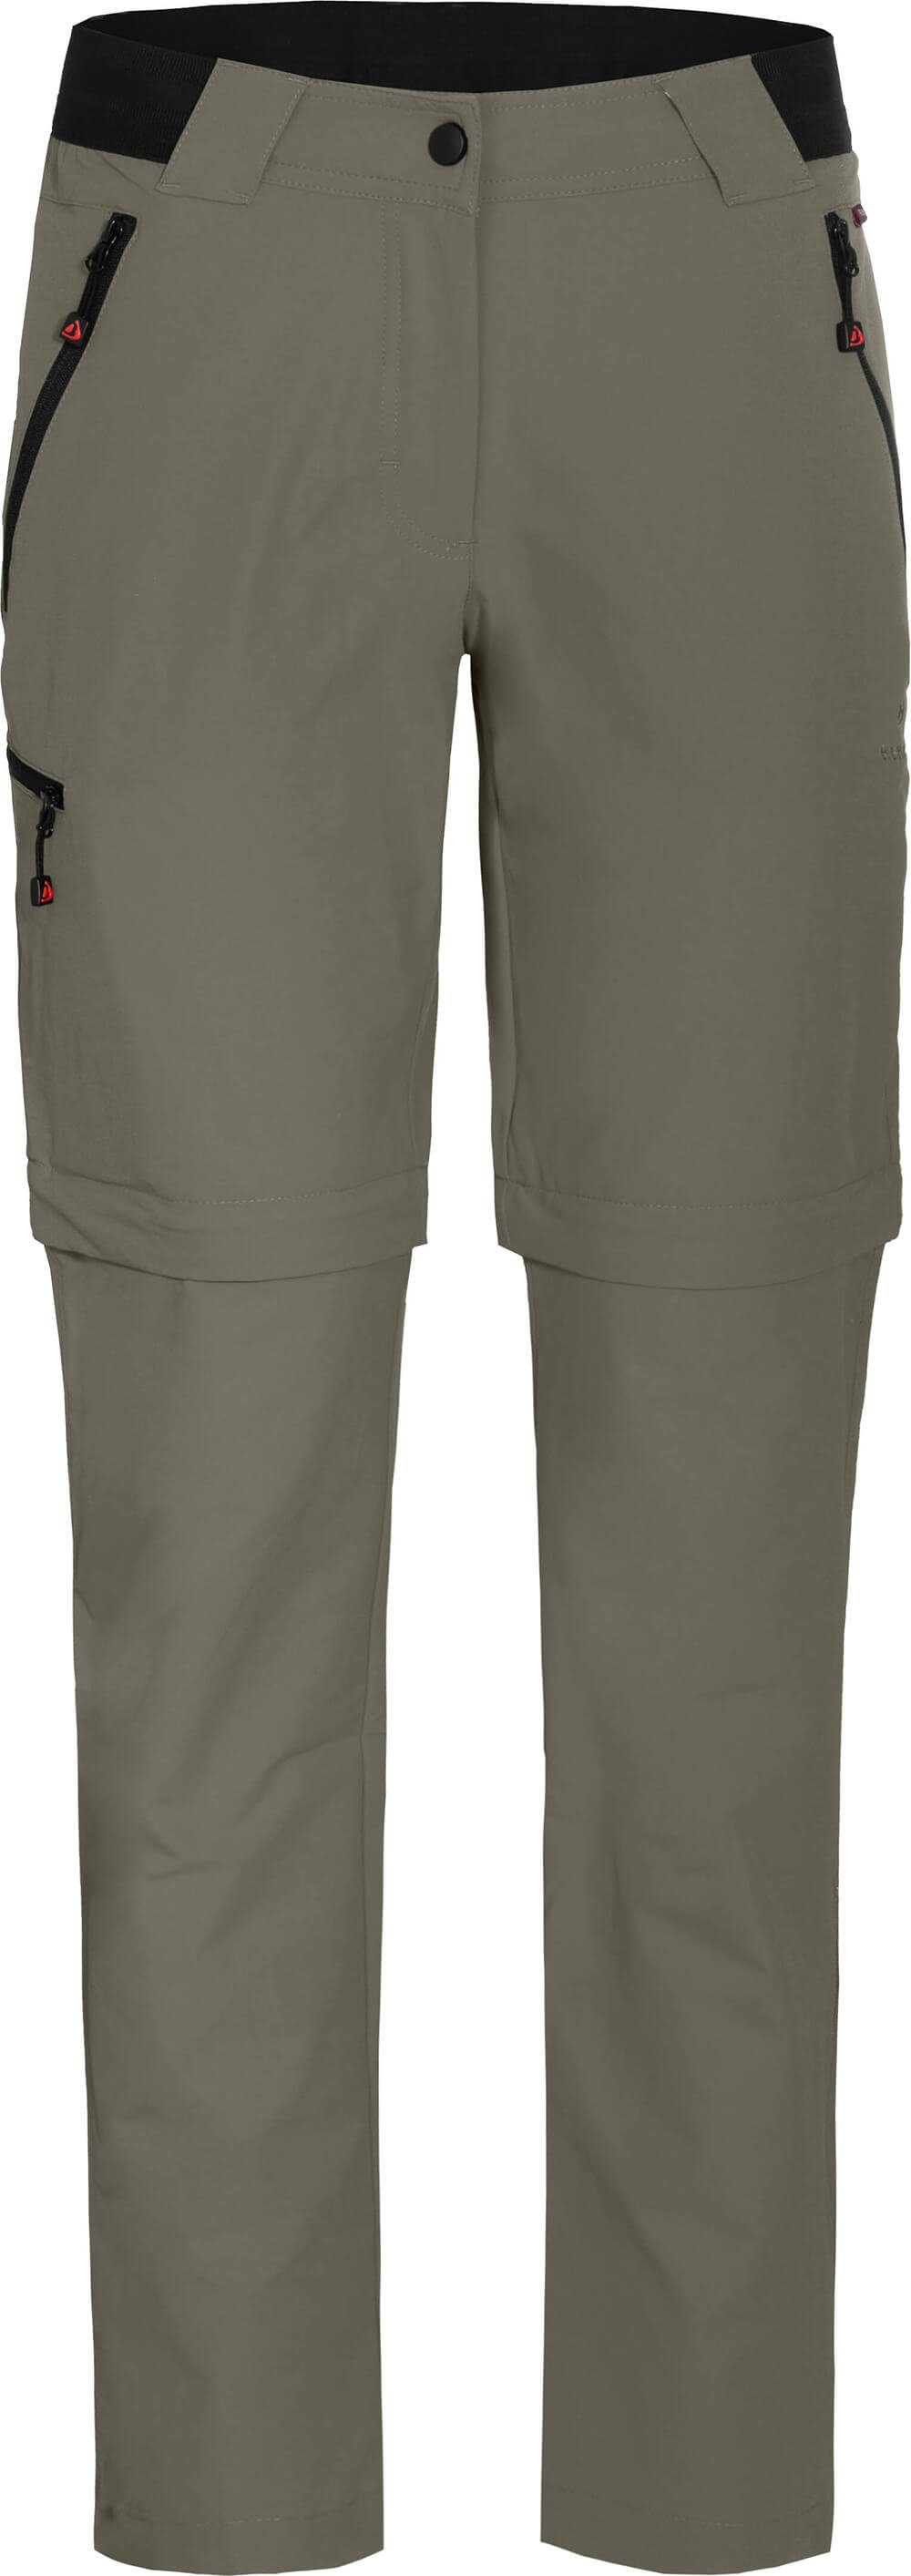 Bergson Zip-off-Hose VIDAA COMFORT Zipp-Off grau/grün Wanderhose, Damen leicht, strapazierfähig, Kurzgrößen